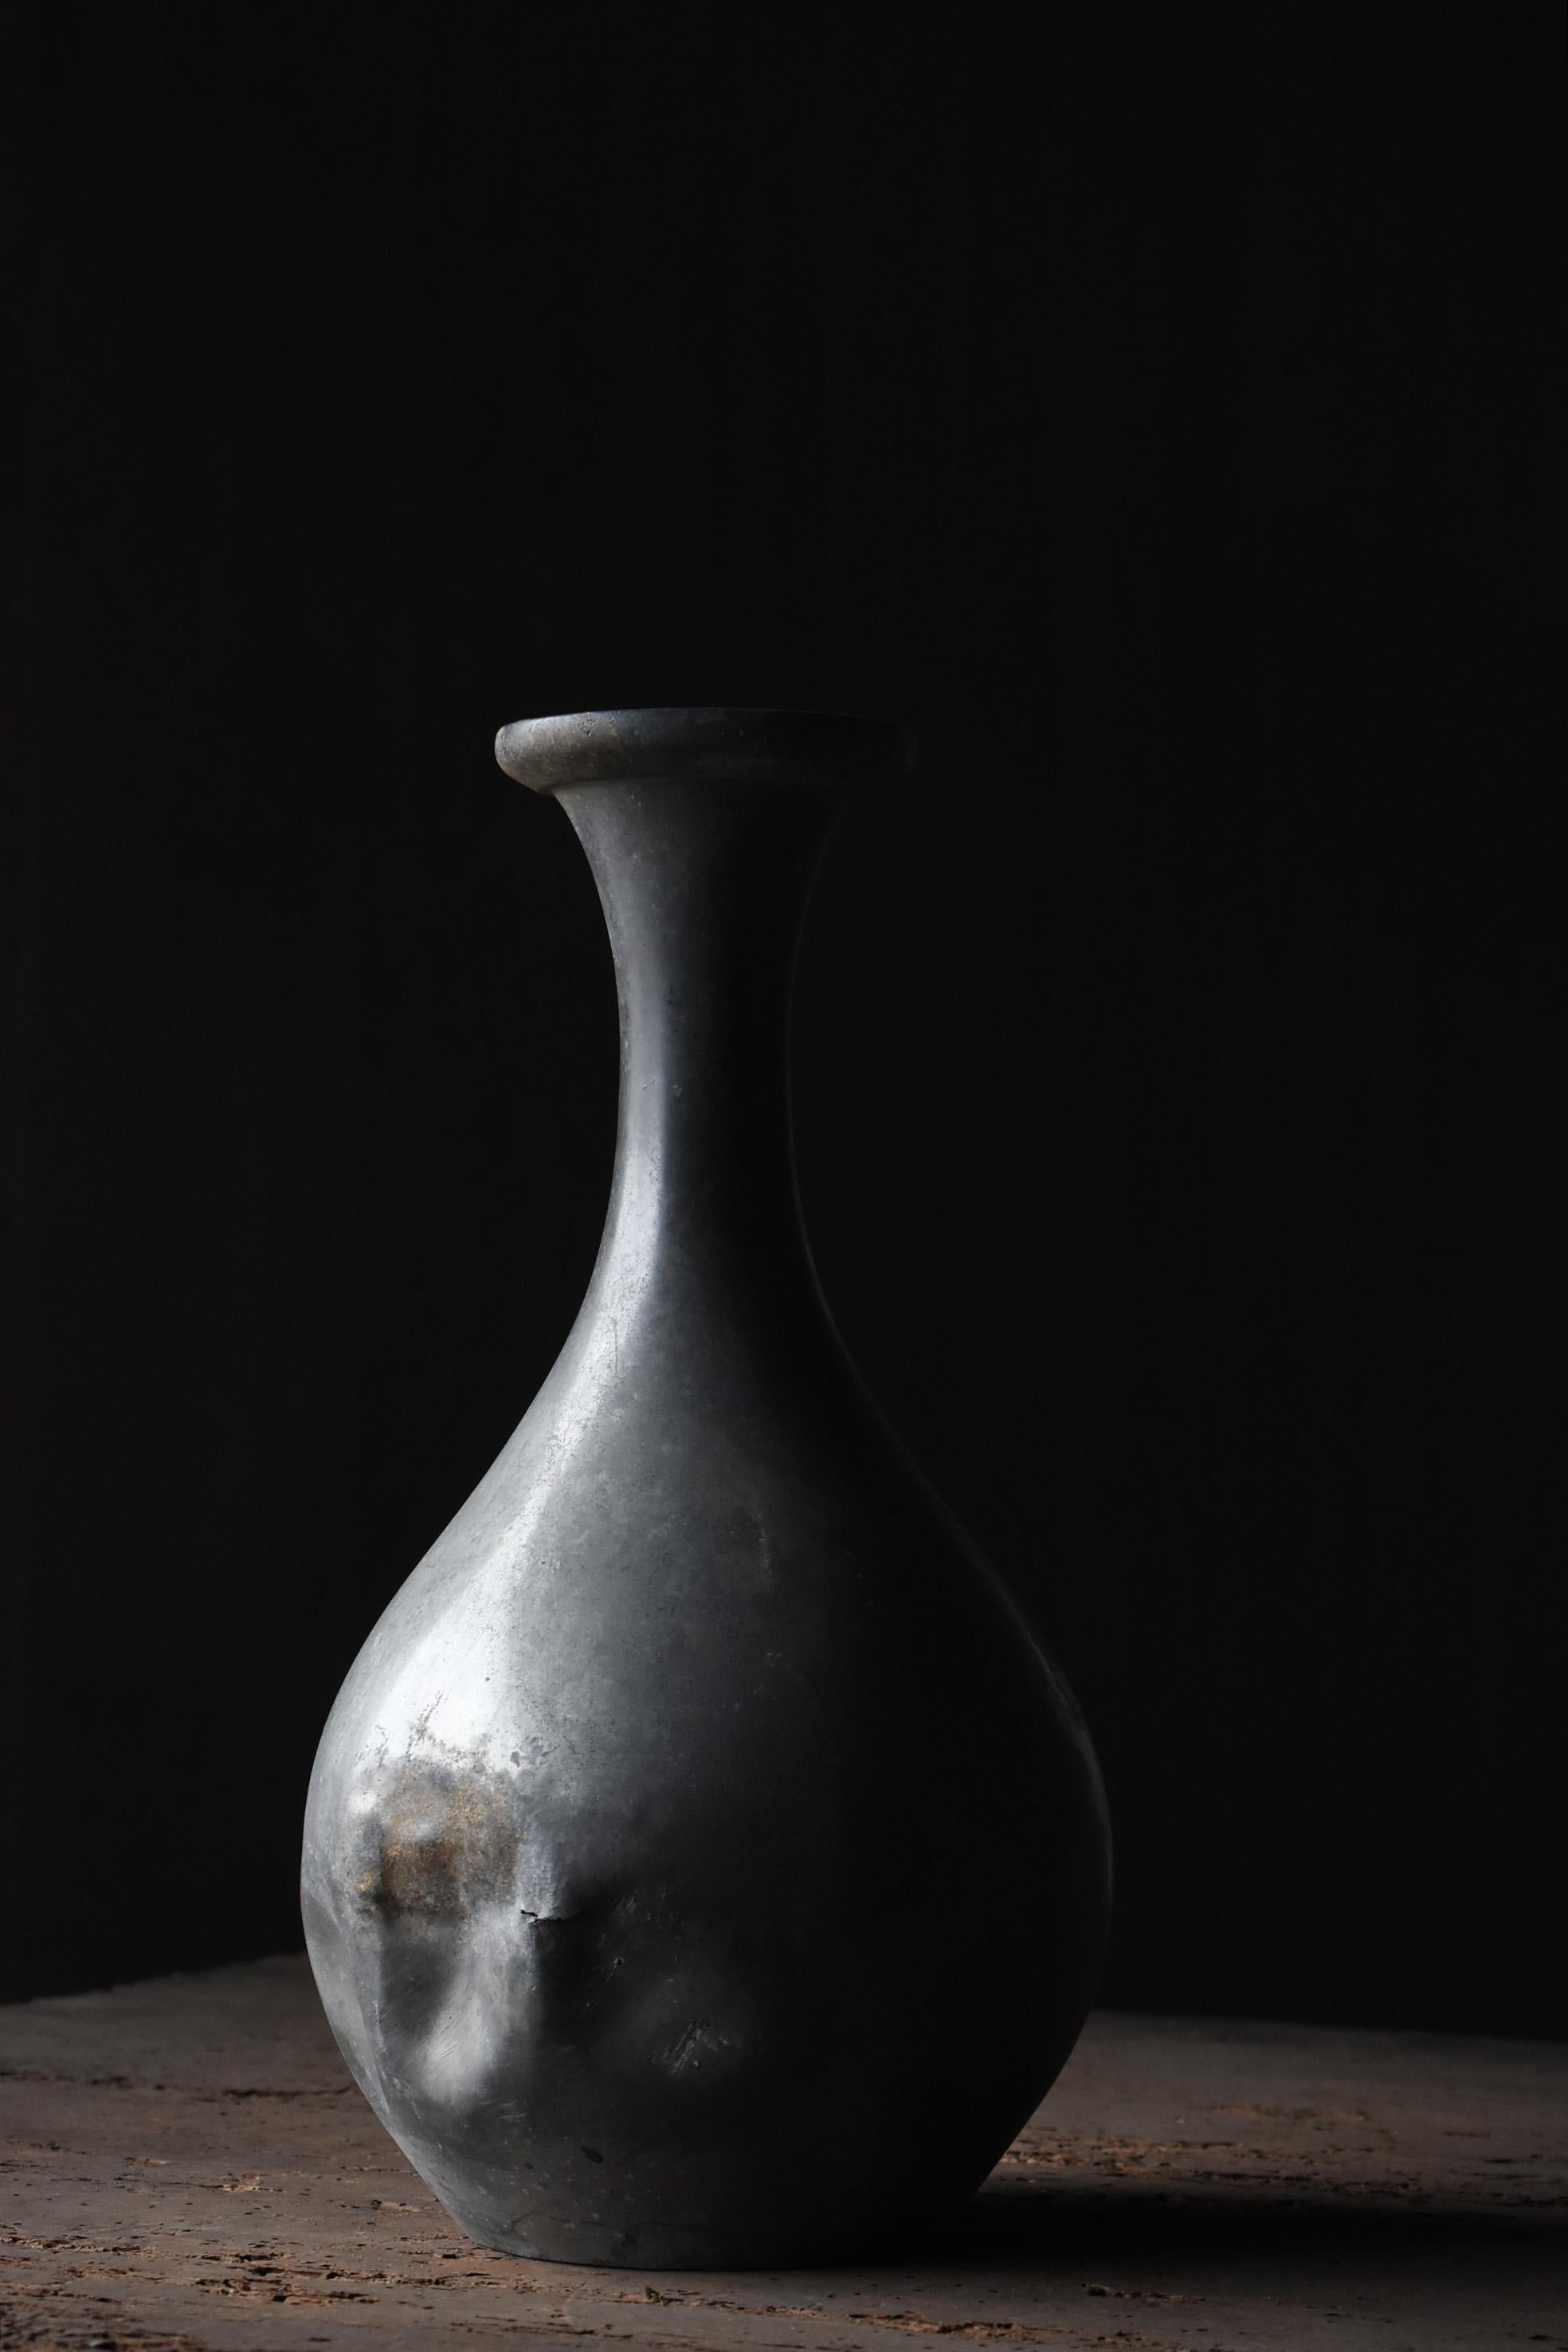 Tin Japanese antique Sake Bottle 1800s-1860s/Flower Vase Vessel Wabisabi art